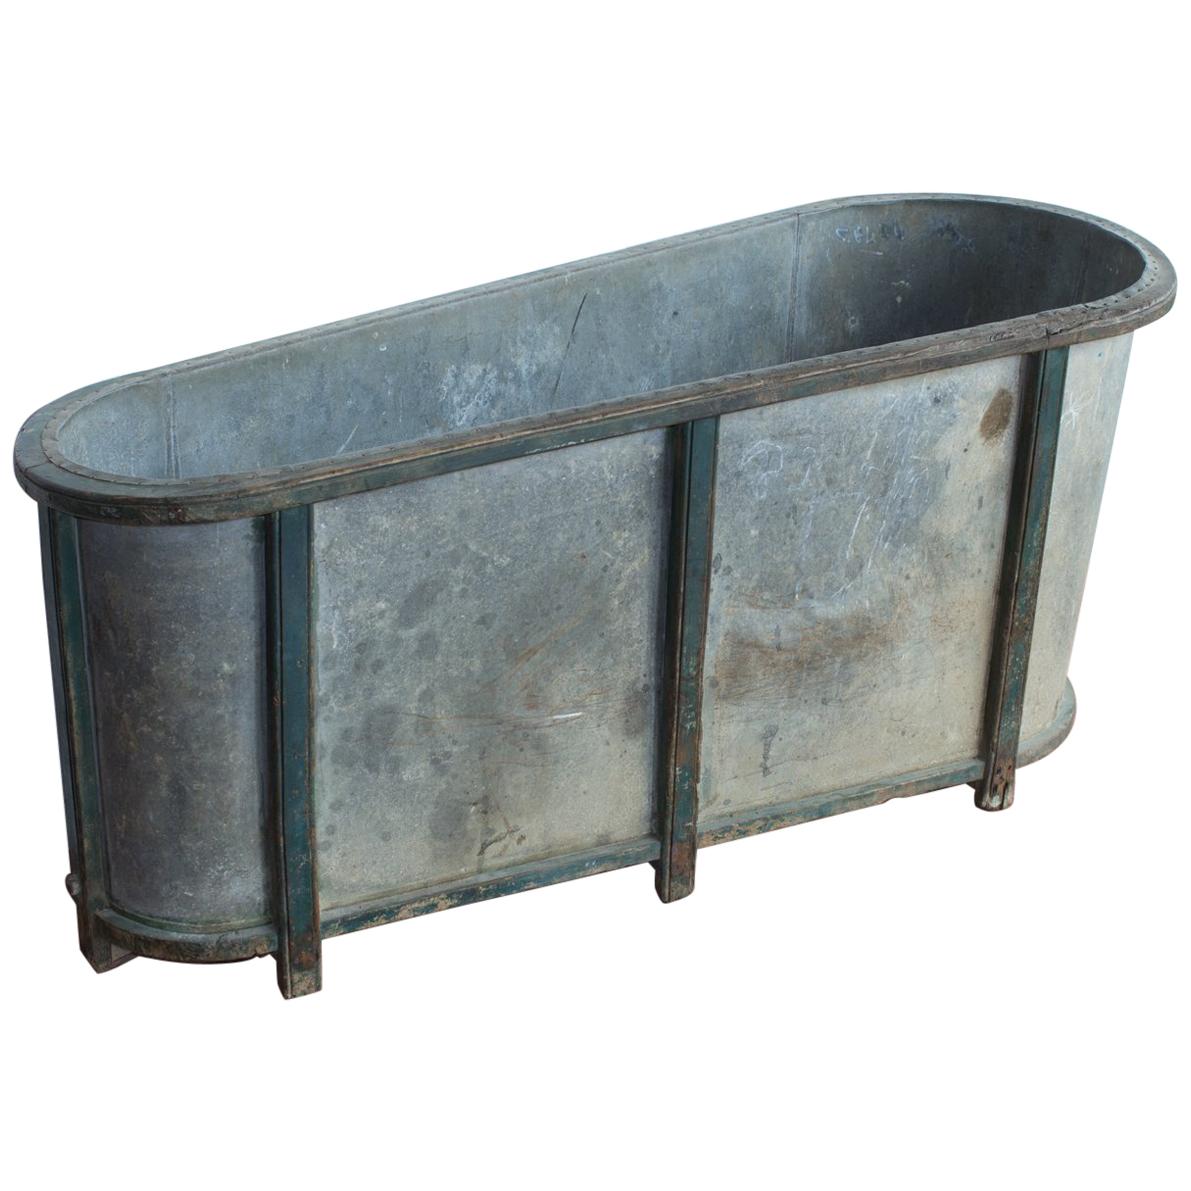 Antique English Zinc Bathtub